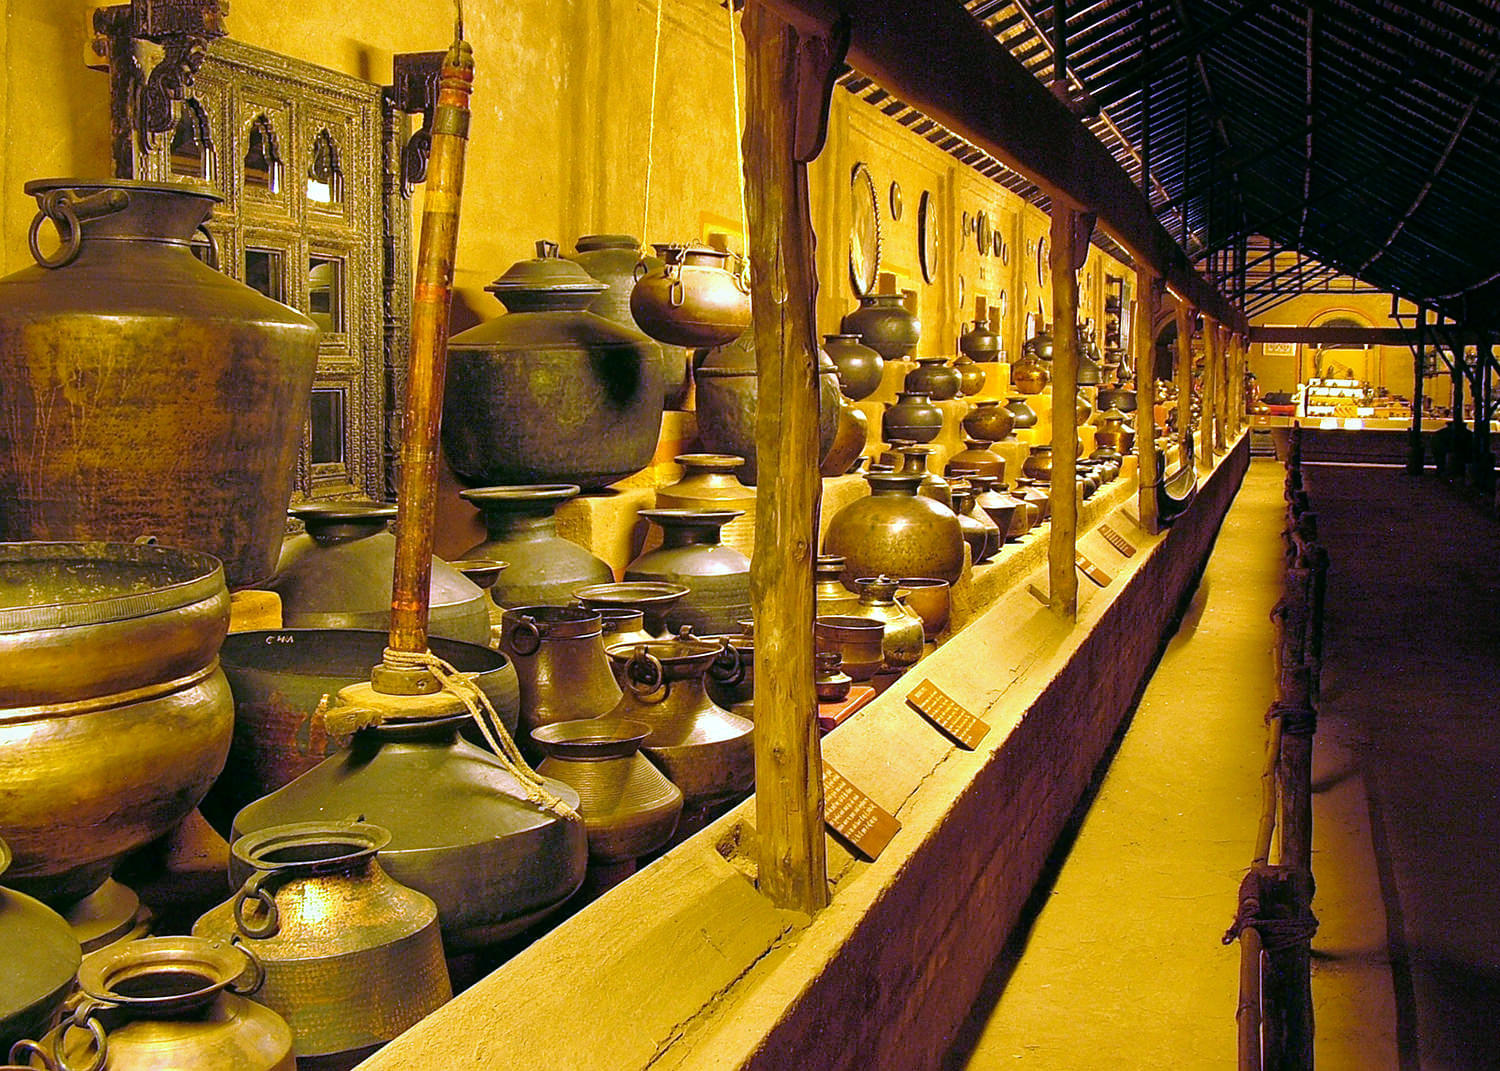 Vechaar Utensils Museum Overview